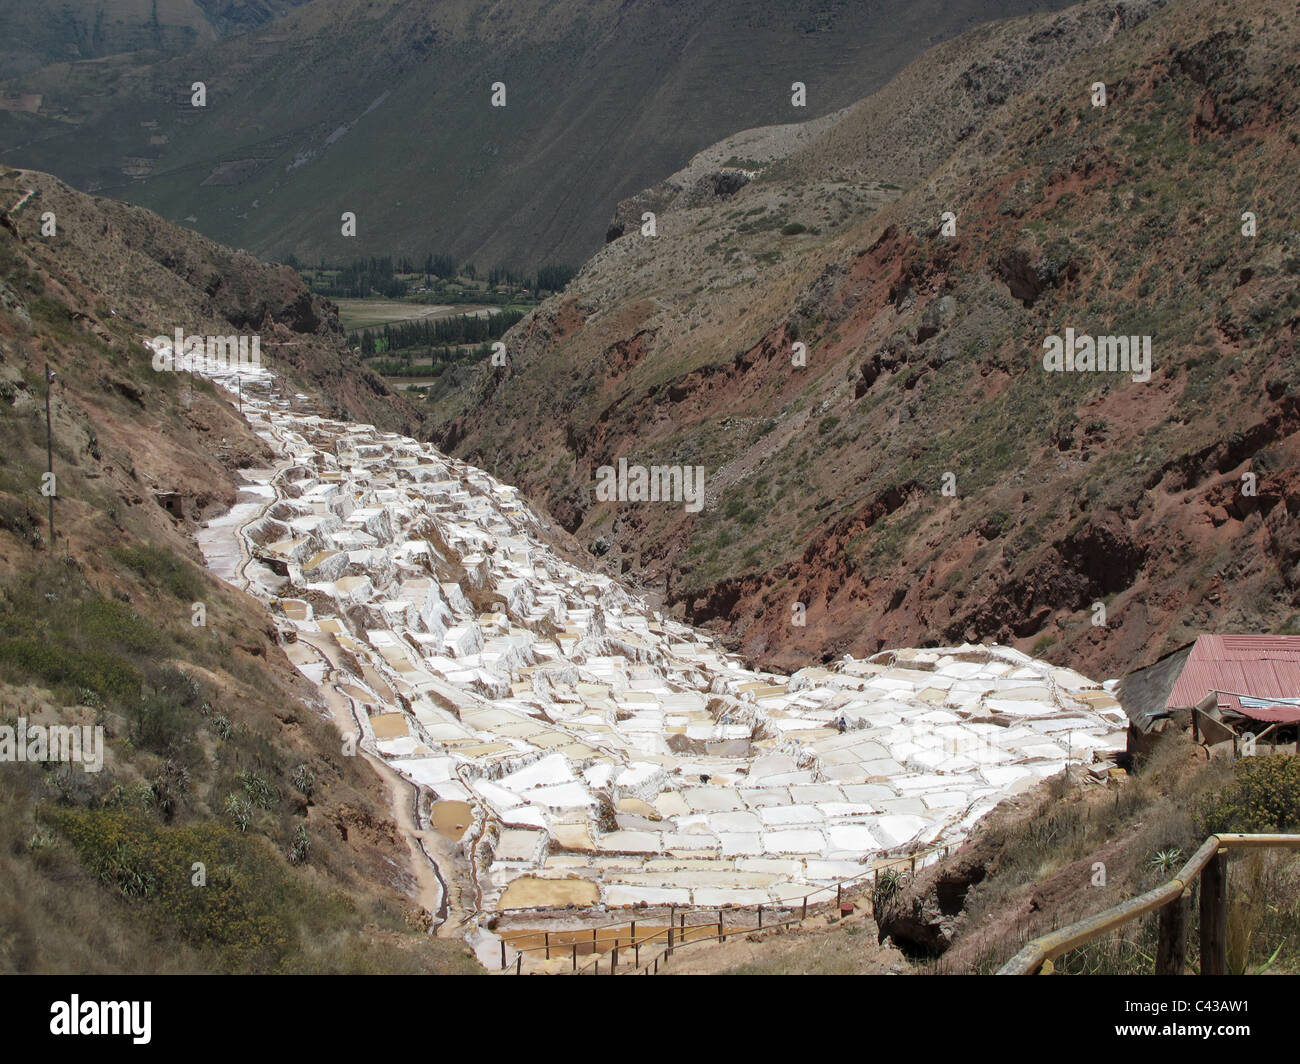 Salinas de maras, les étangs d'eau salée en terrasses à flanc de montagne, sur la vallée de l'Urubamba, au Pérou Banque D'Images